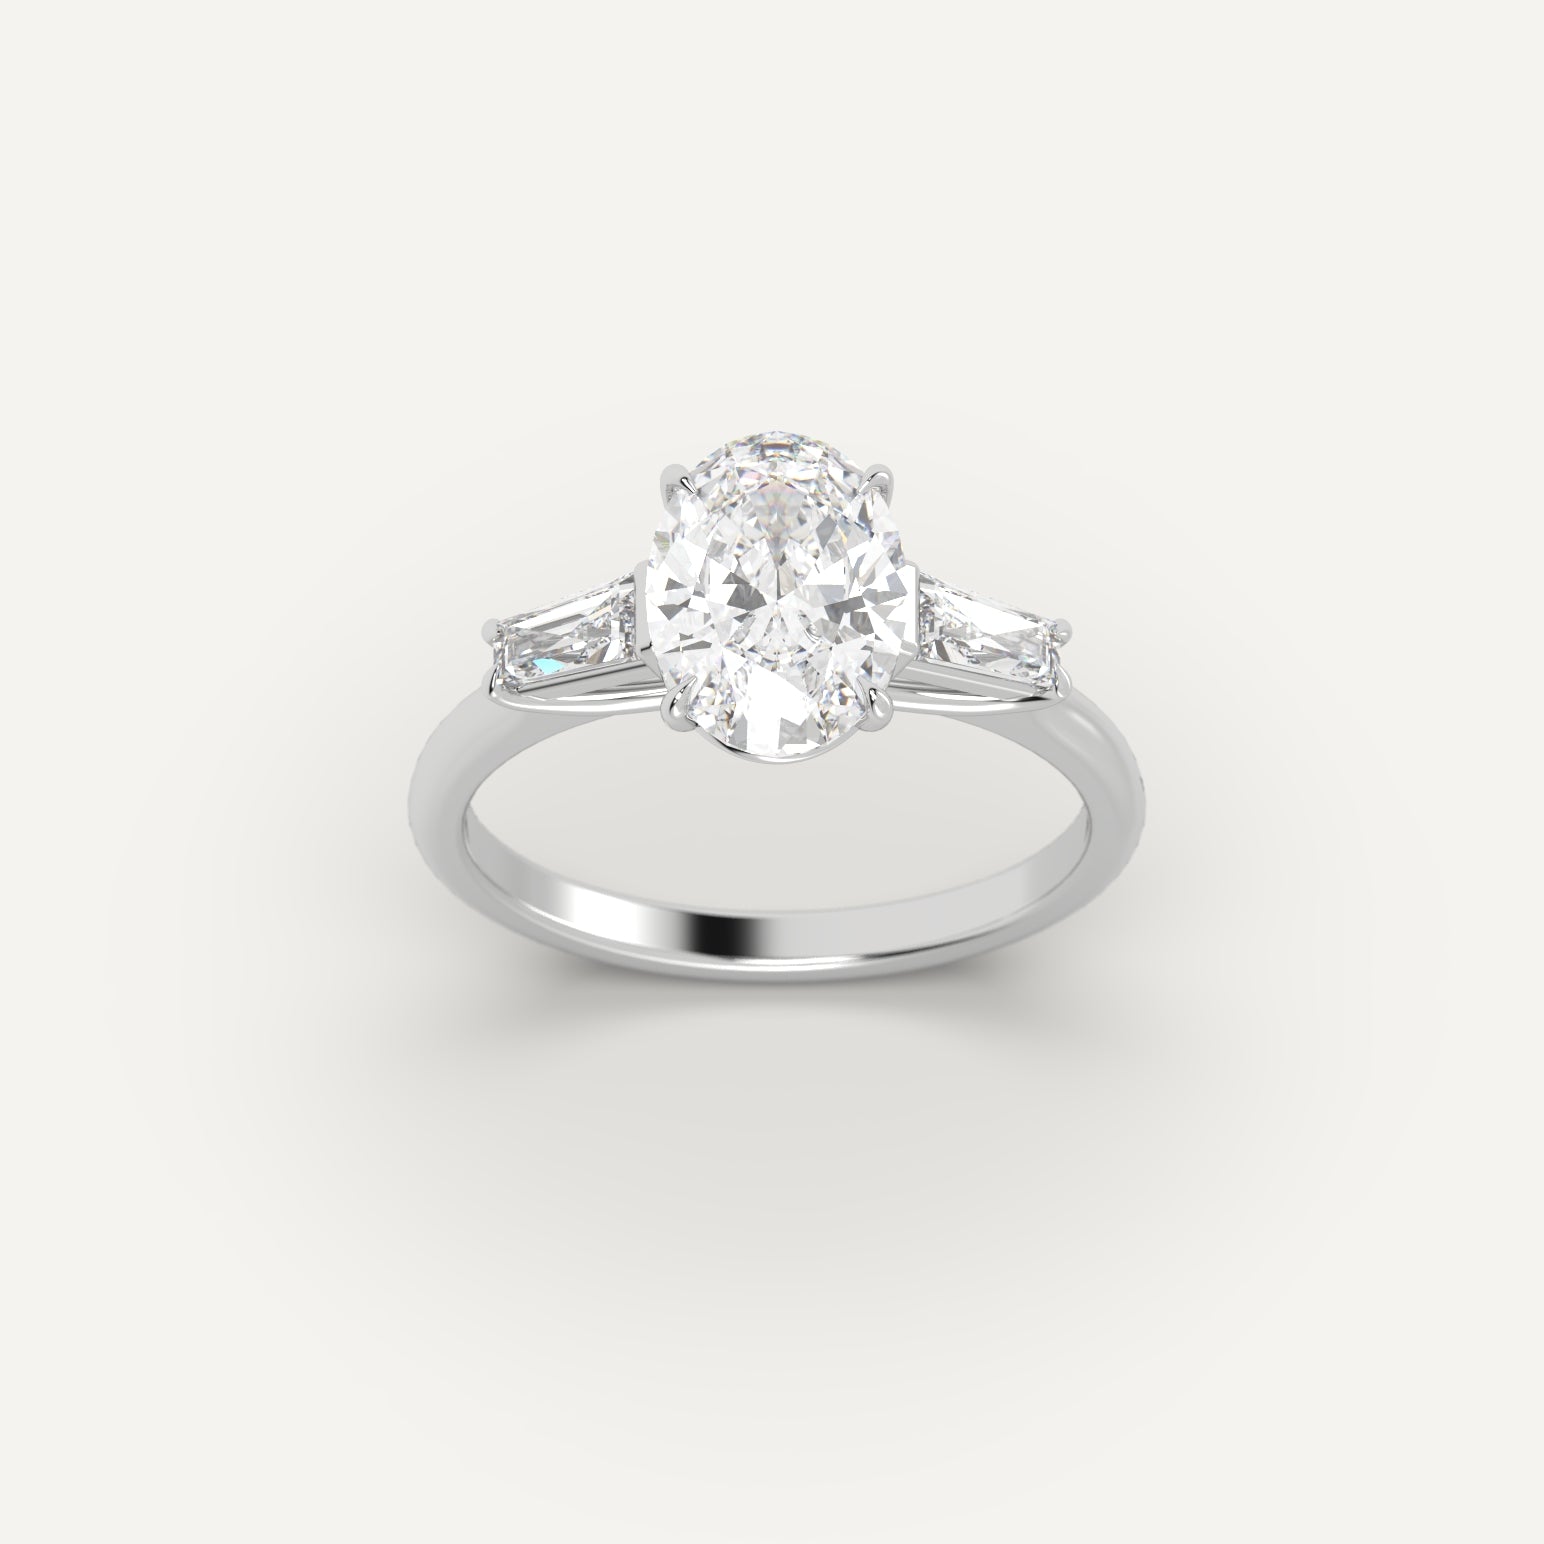 White Gold 3.4 Carat Engagement Ring